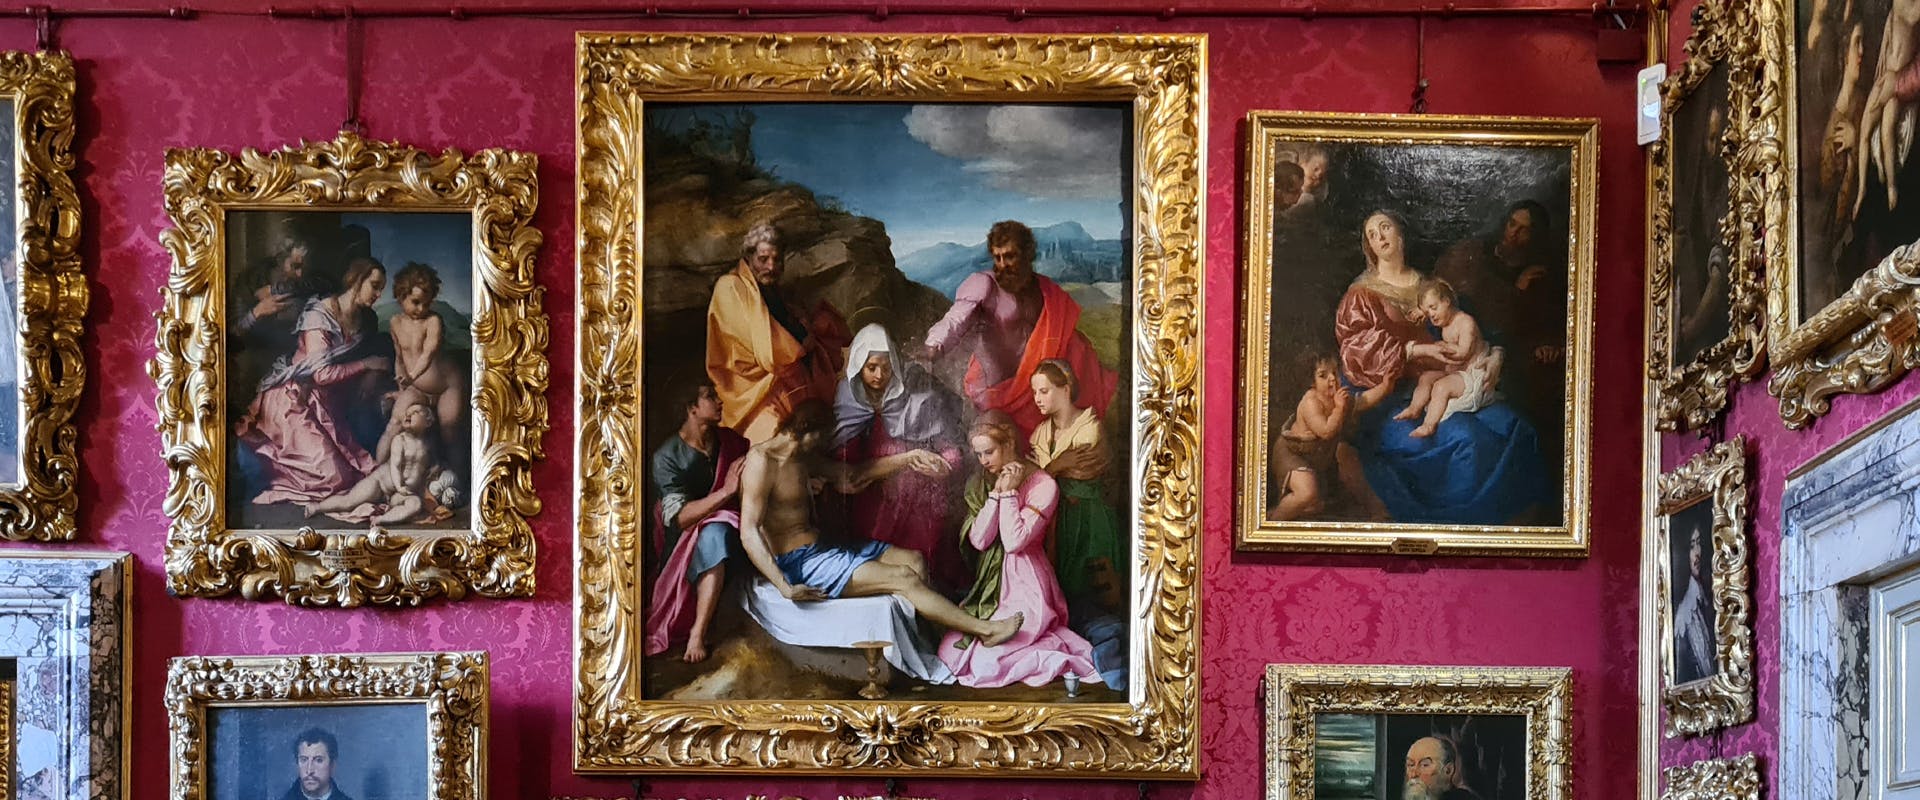 Andrea del Sarto's masterpiece "Pietà di Luco" back in Pitti Palace